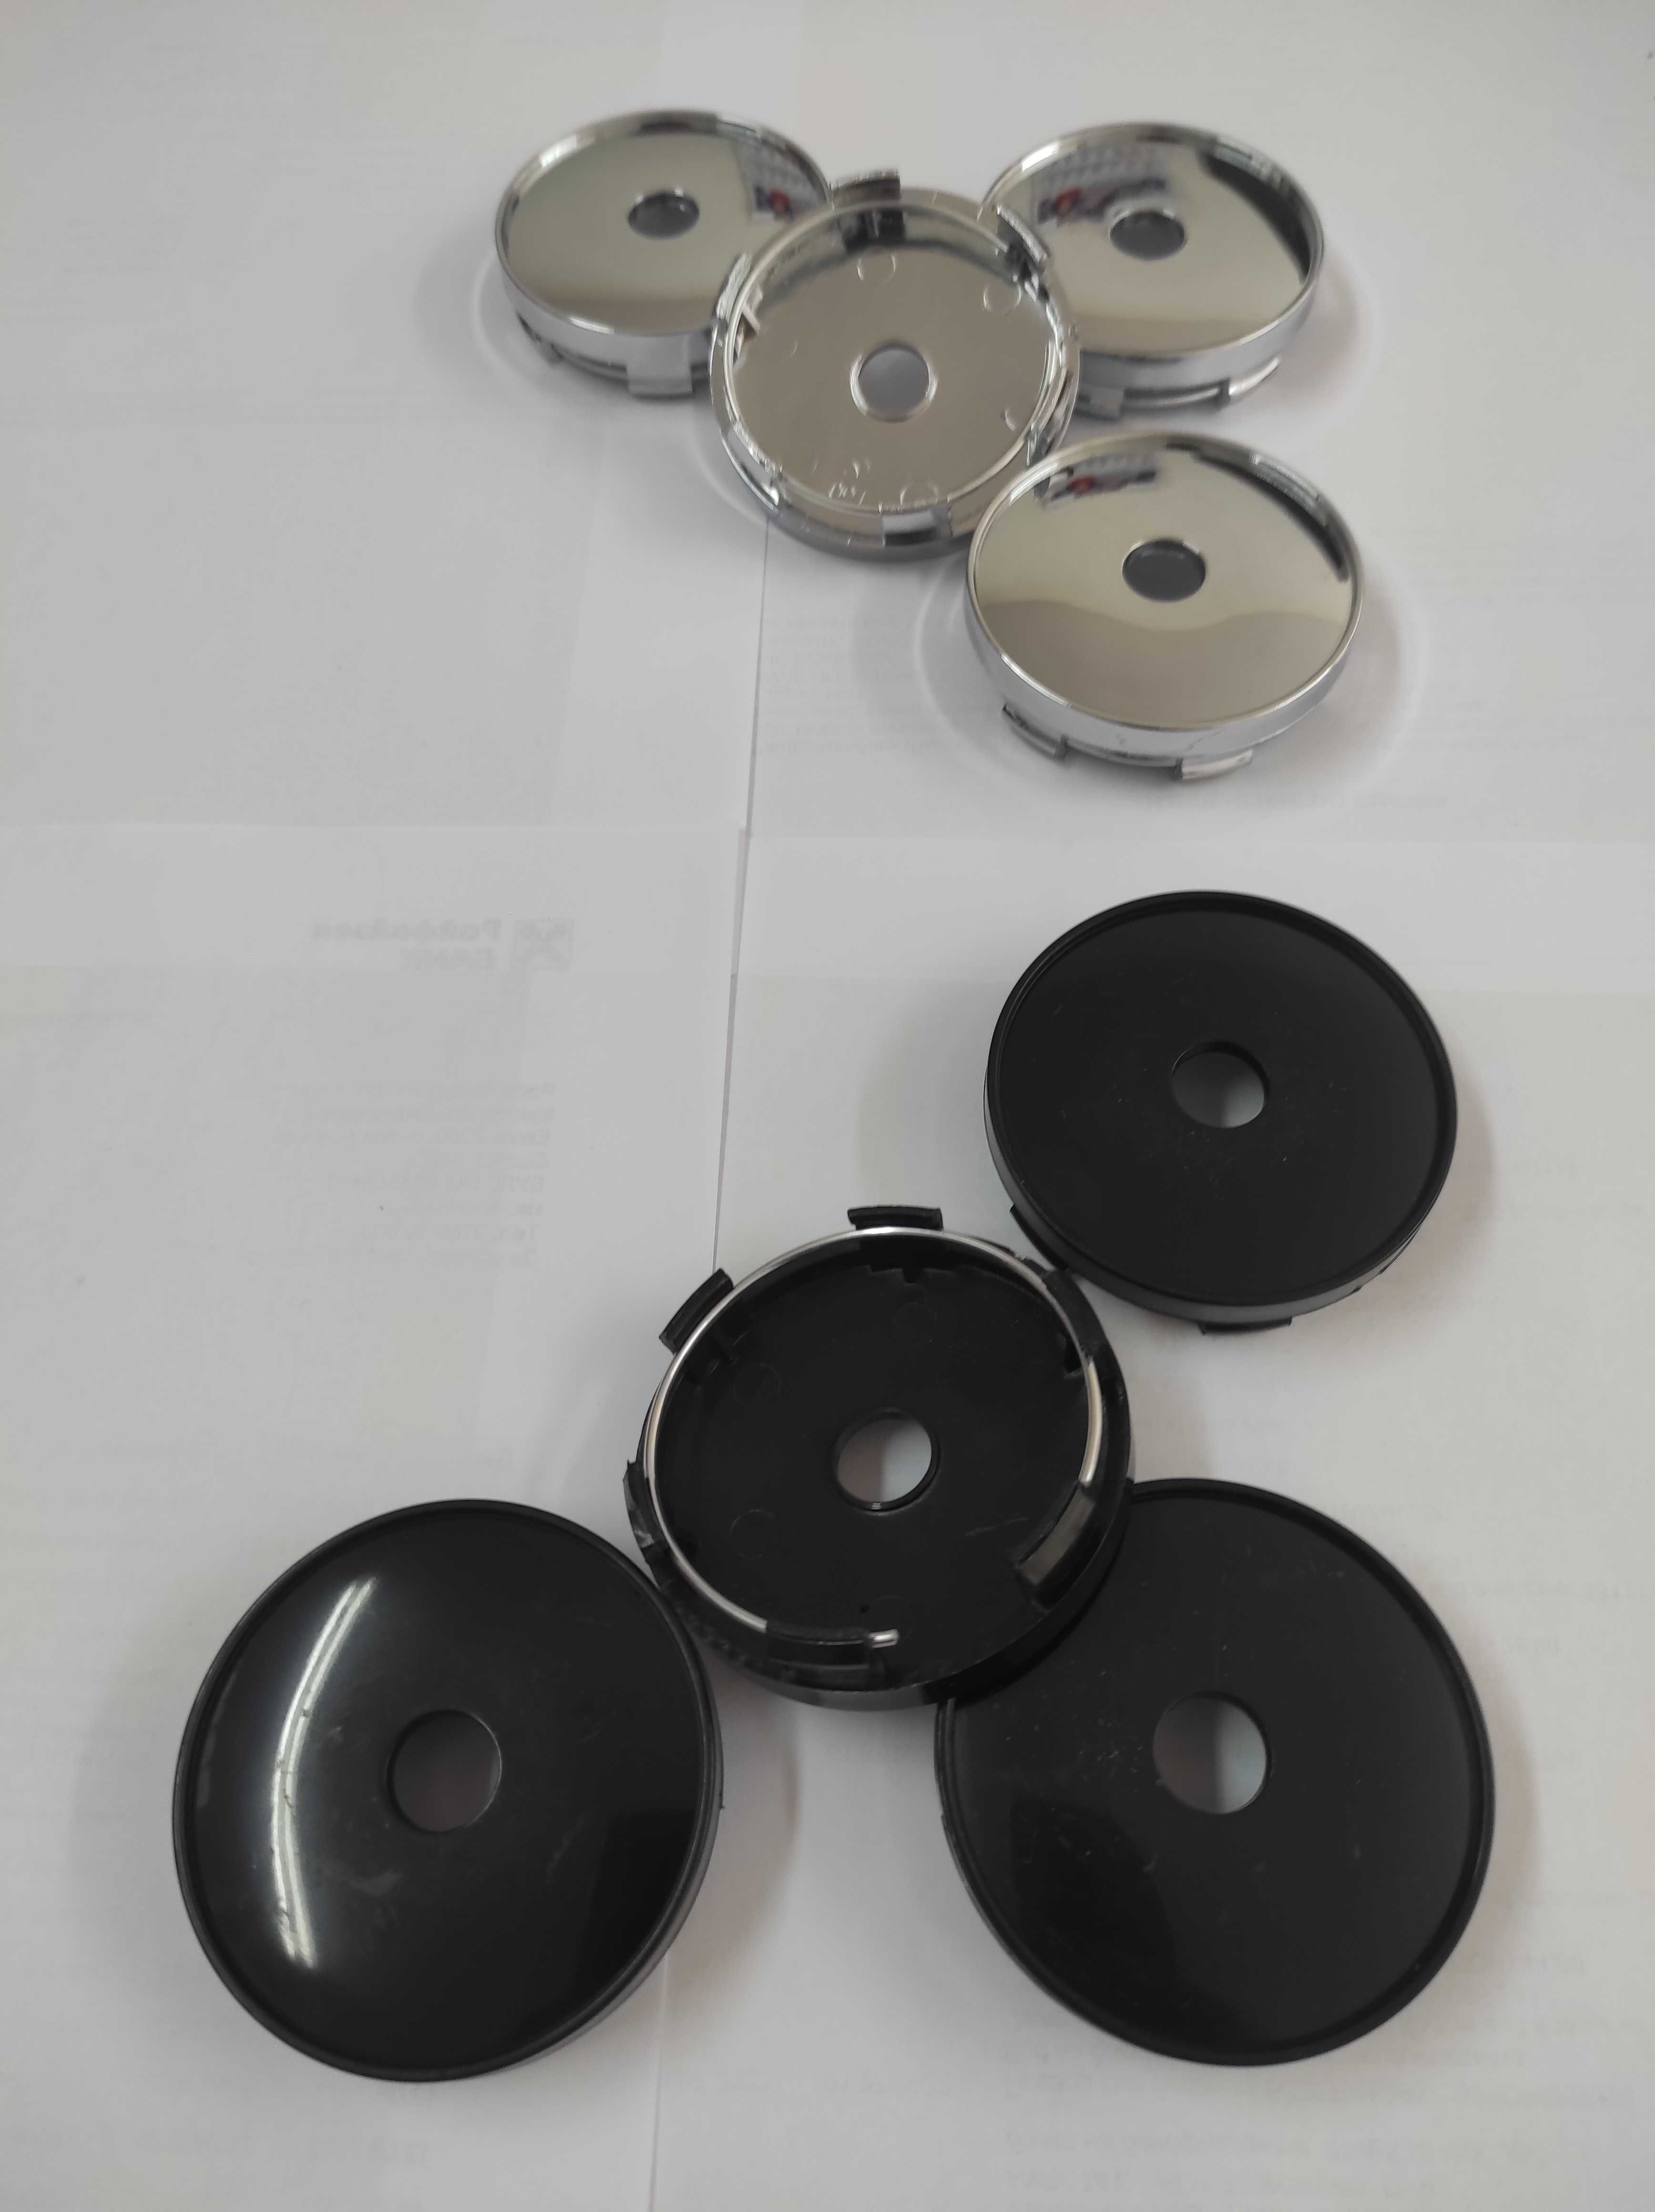 Универсални Капачки за Джанти - 60 мм. с отвор. Цвят: Хром и черно.